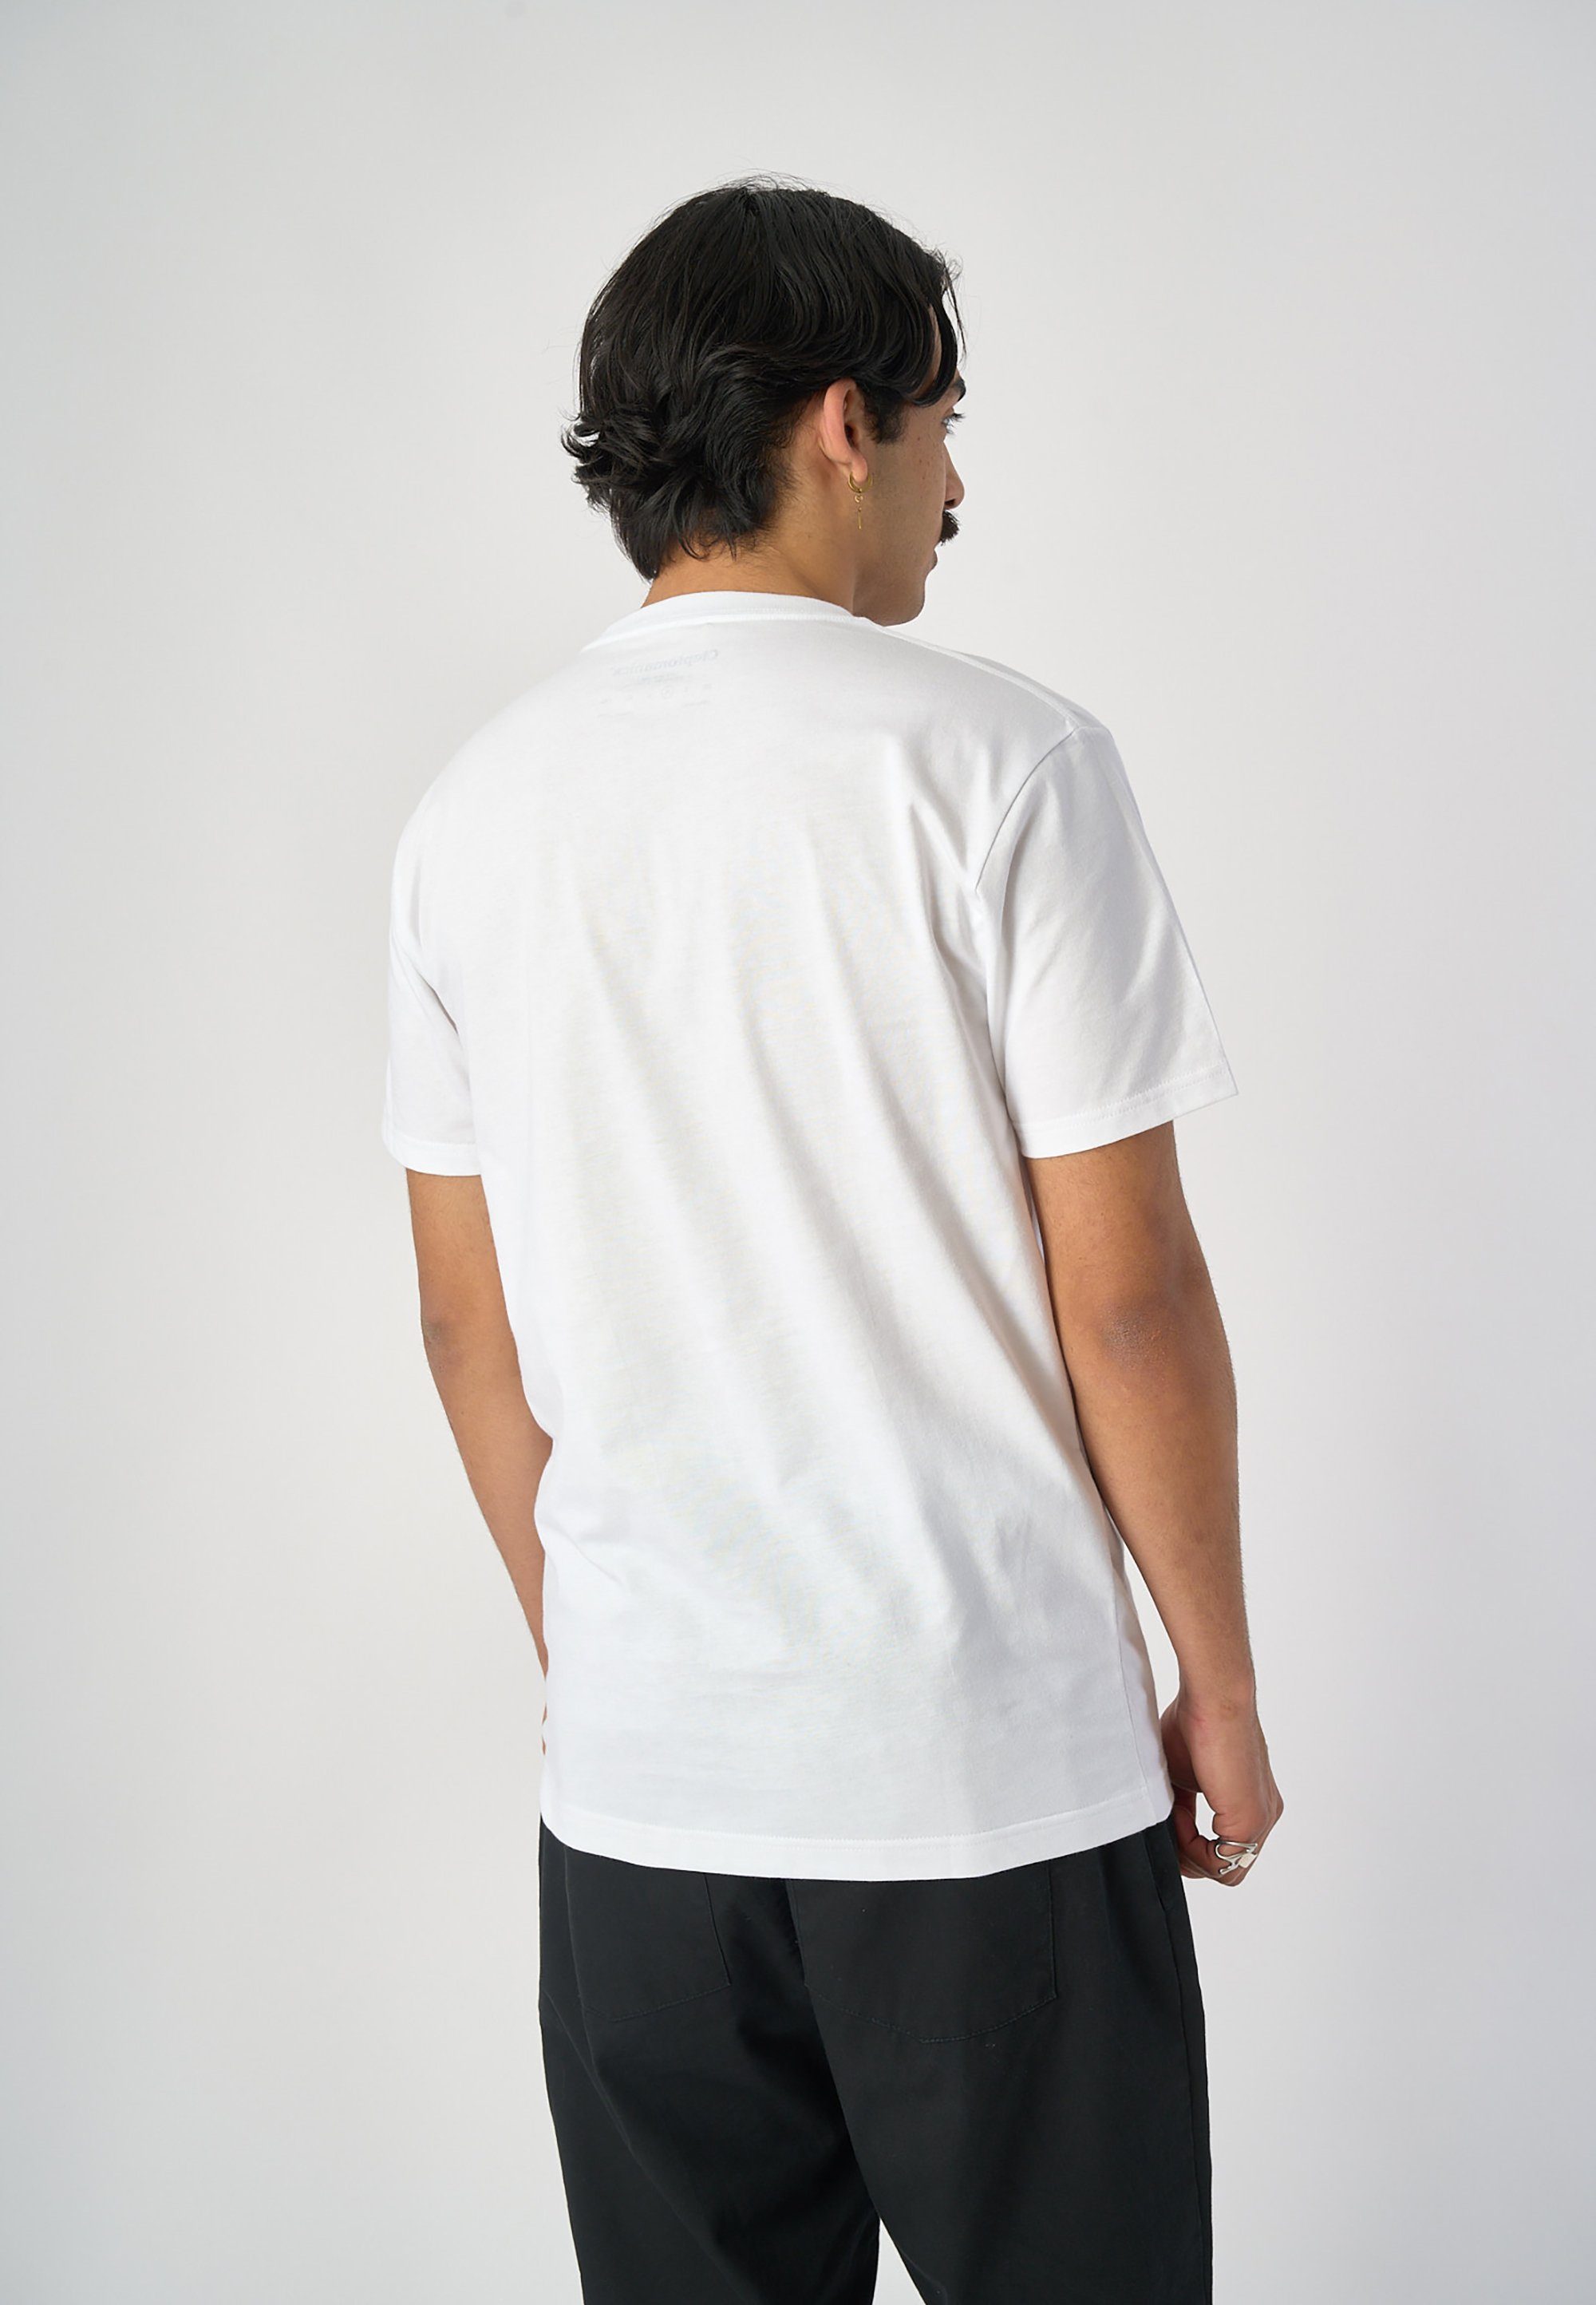 Cleptomanicx T-Shirt Schnitt mit Services lockerem weiß